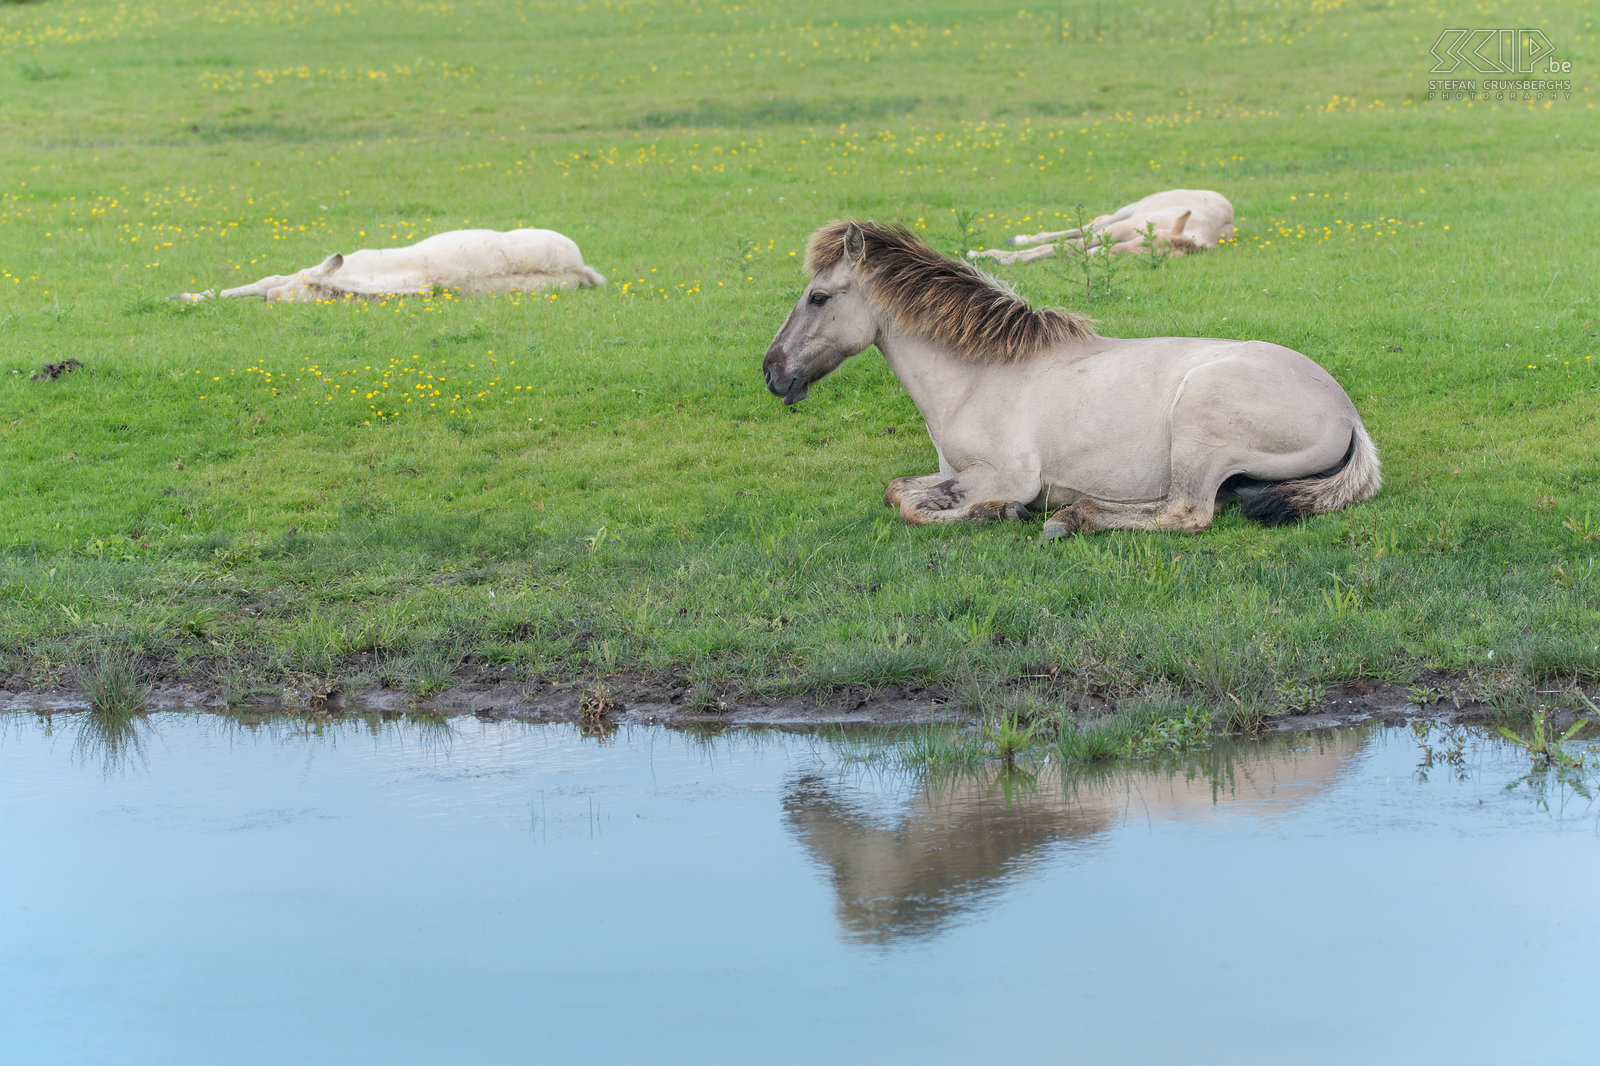 Oostvaardersplassen - Konik paarden In de Oostvaardersplassen werden 25 jaar geleden edelherten, heckrunderen en konik paarden uitgezet. Nu leven er ongeveer 1100 wilde paarden en dat is de grootste populatie in Europa.  Stefan Cruysberghs